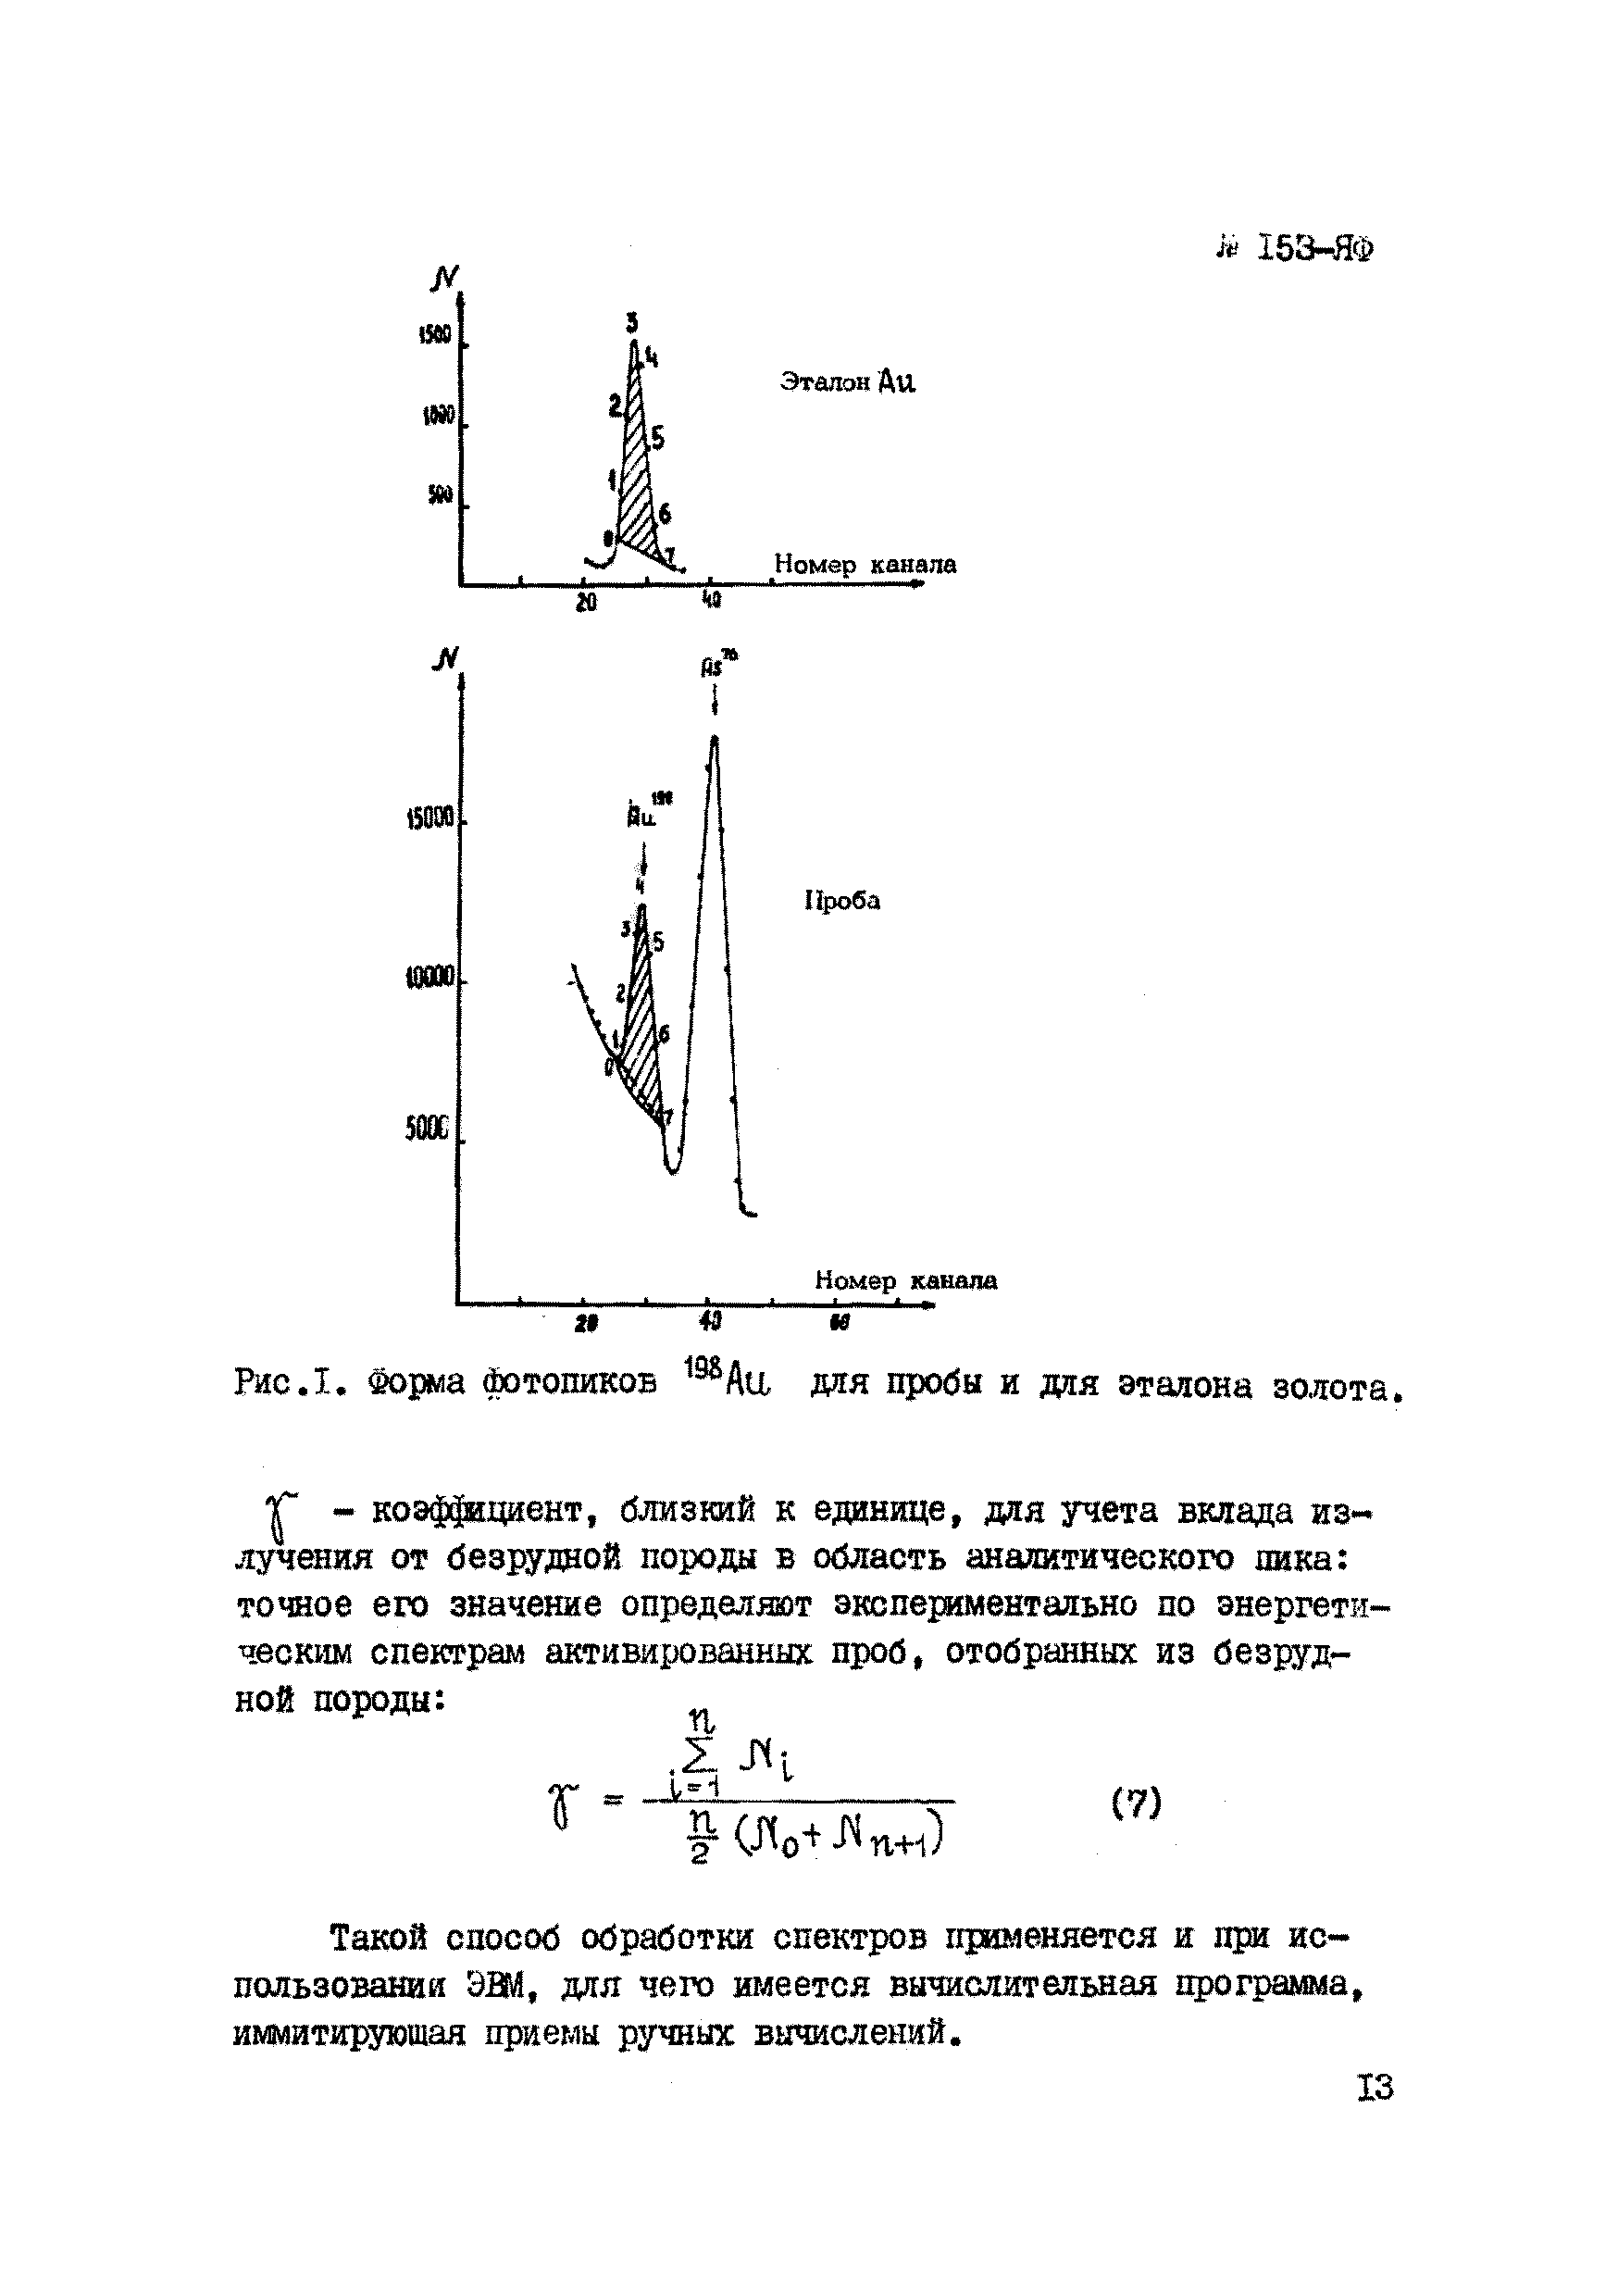 Инструкция НСАМ 153-ЯФ